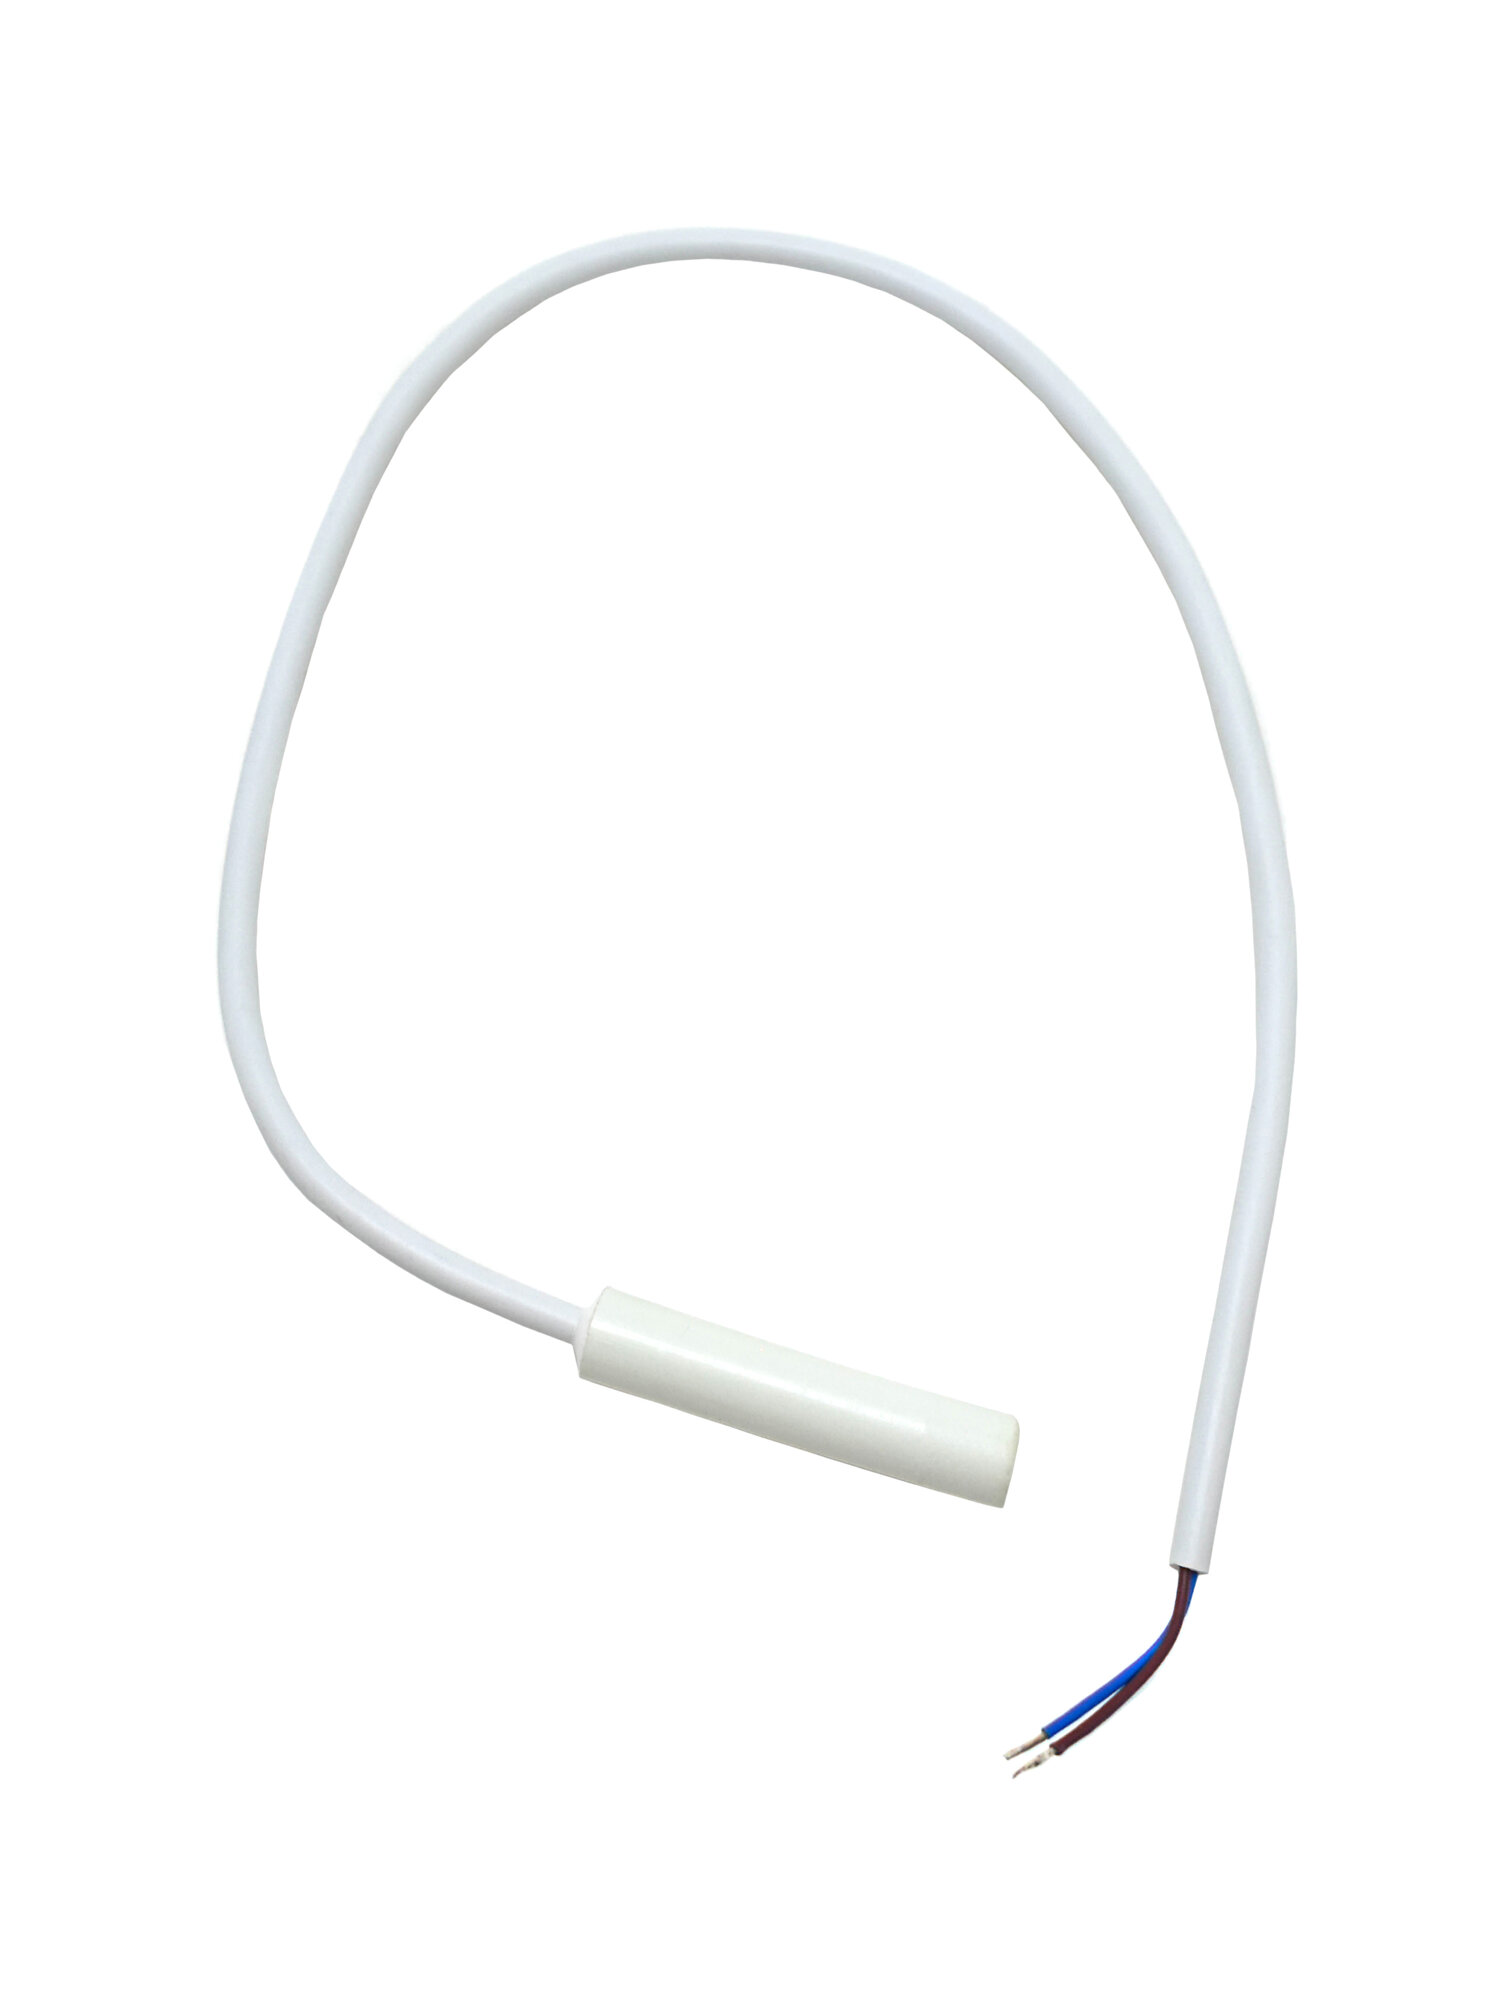 Сенсорный датчик для холодильника Whirlpool, Electrolux RK028500, L=400 мм